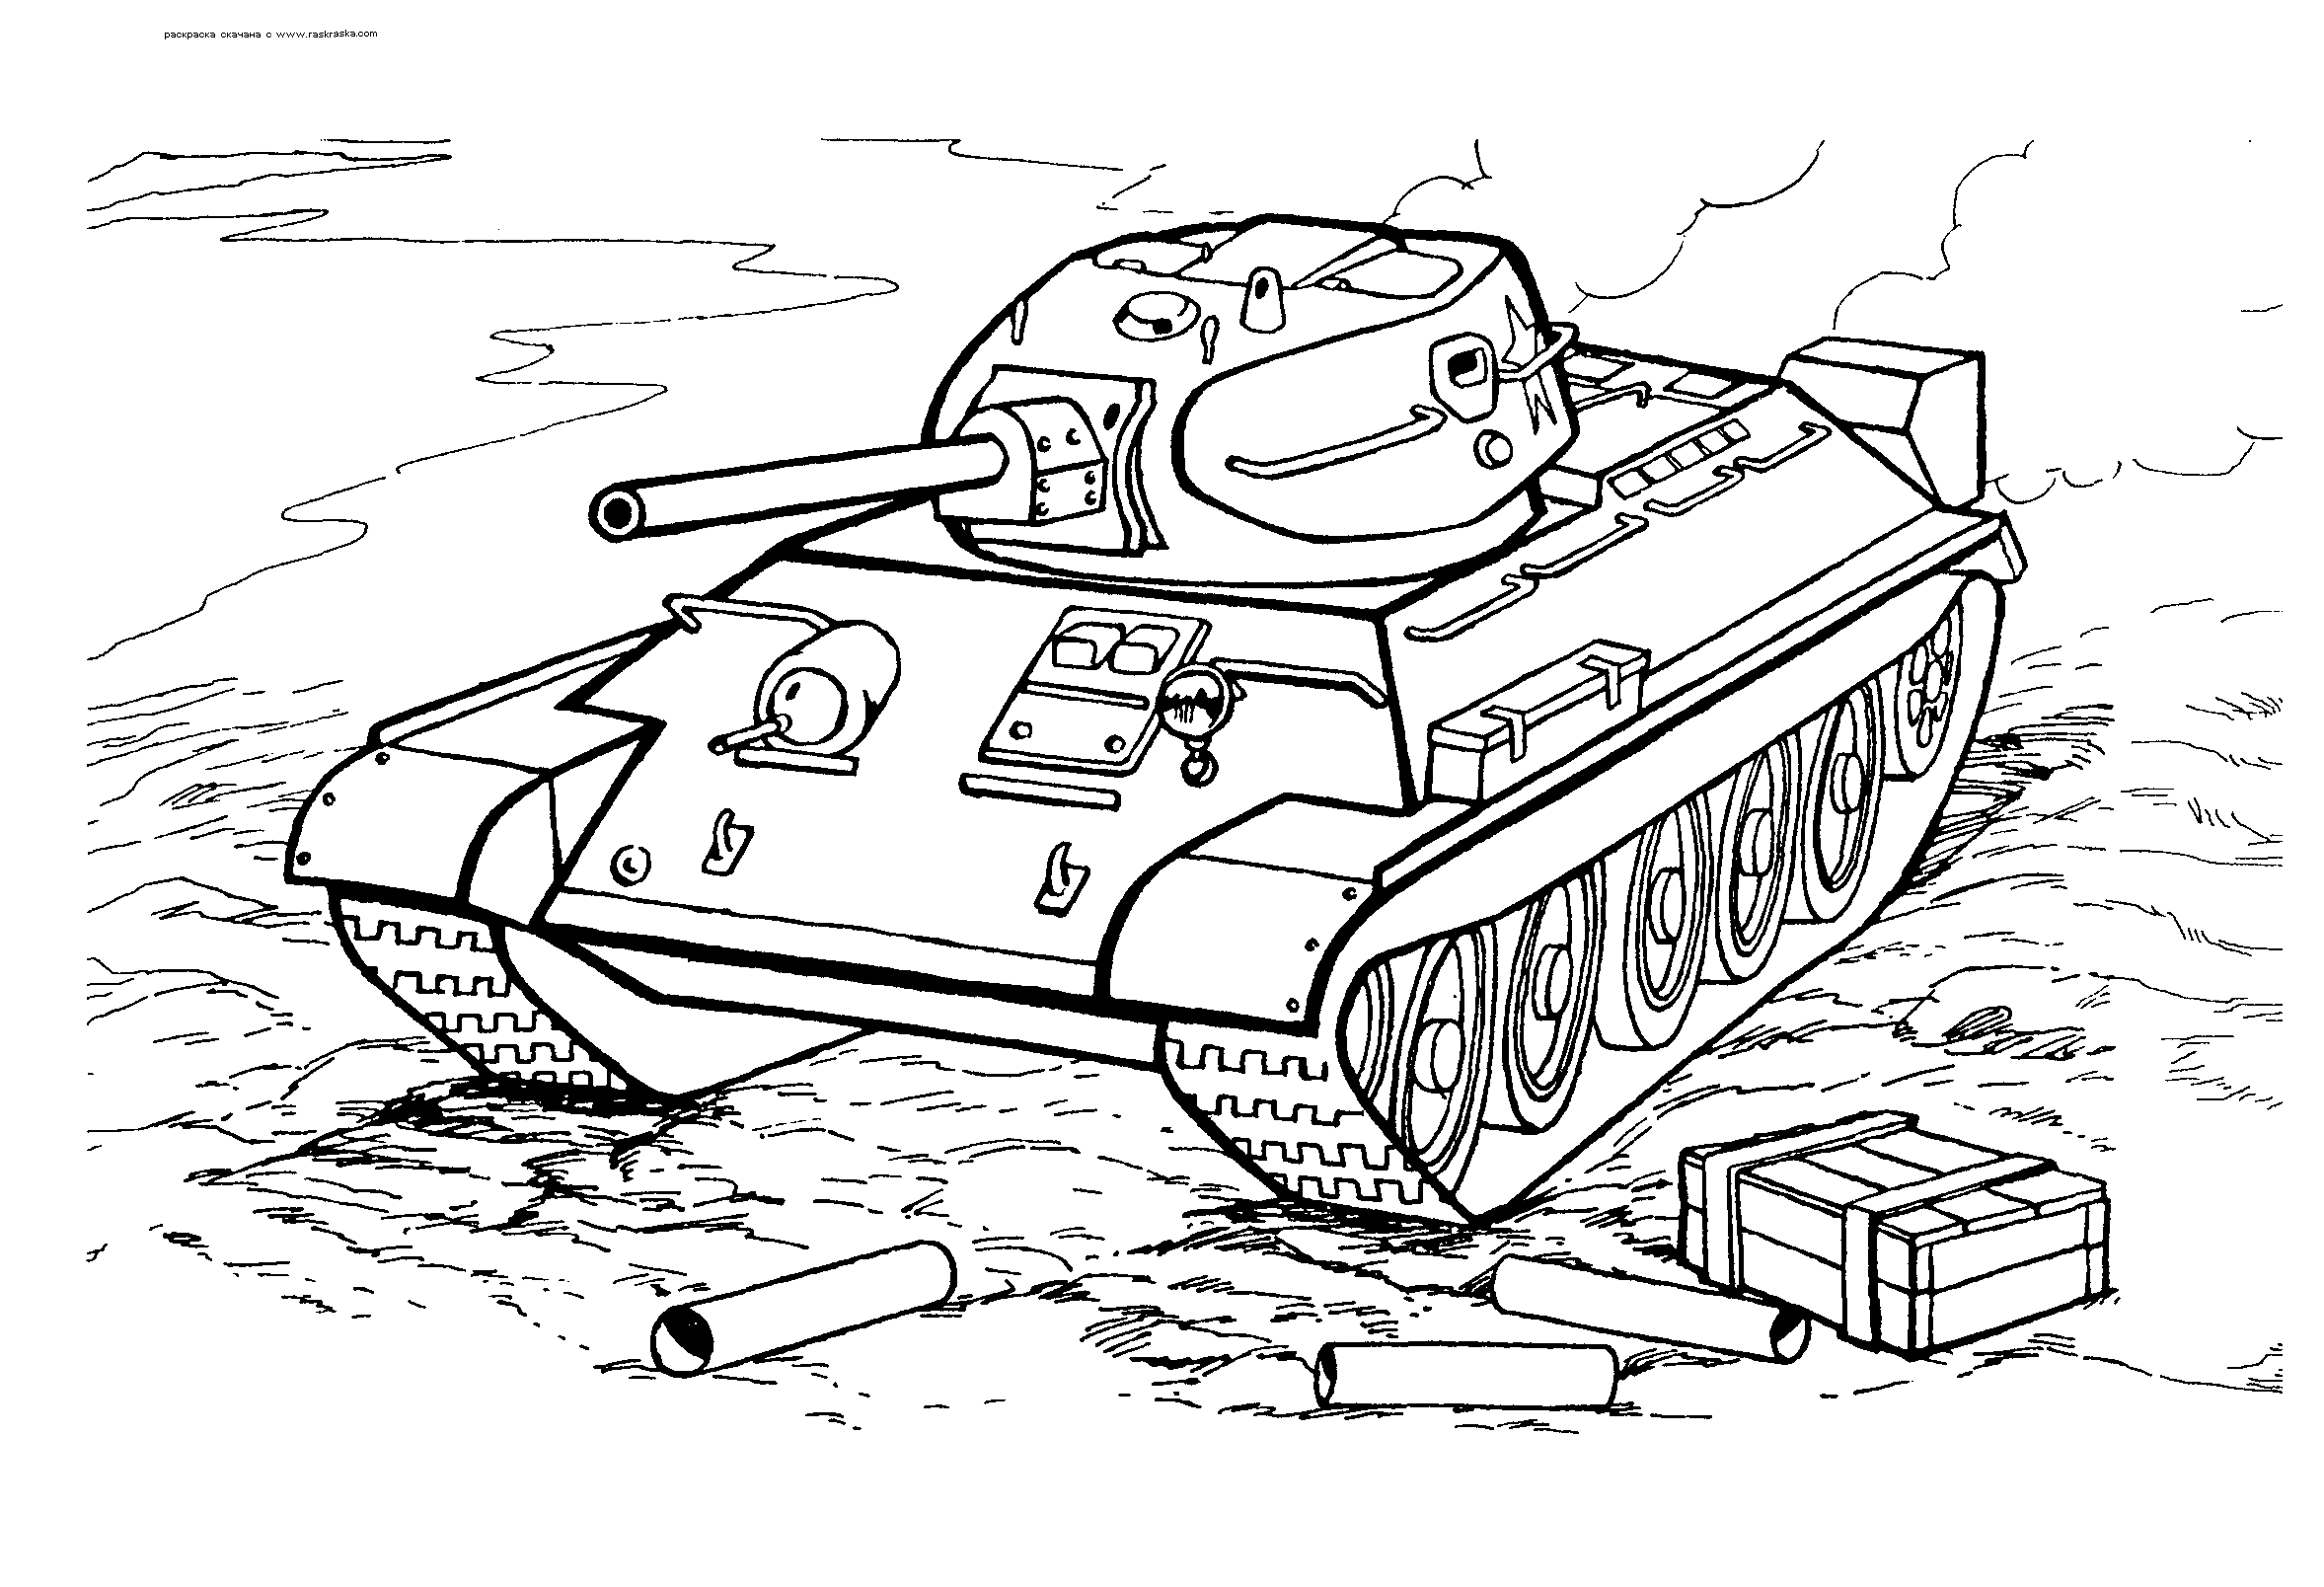 malvorlagen - t-34